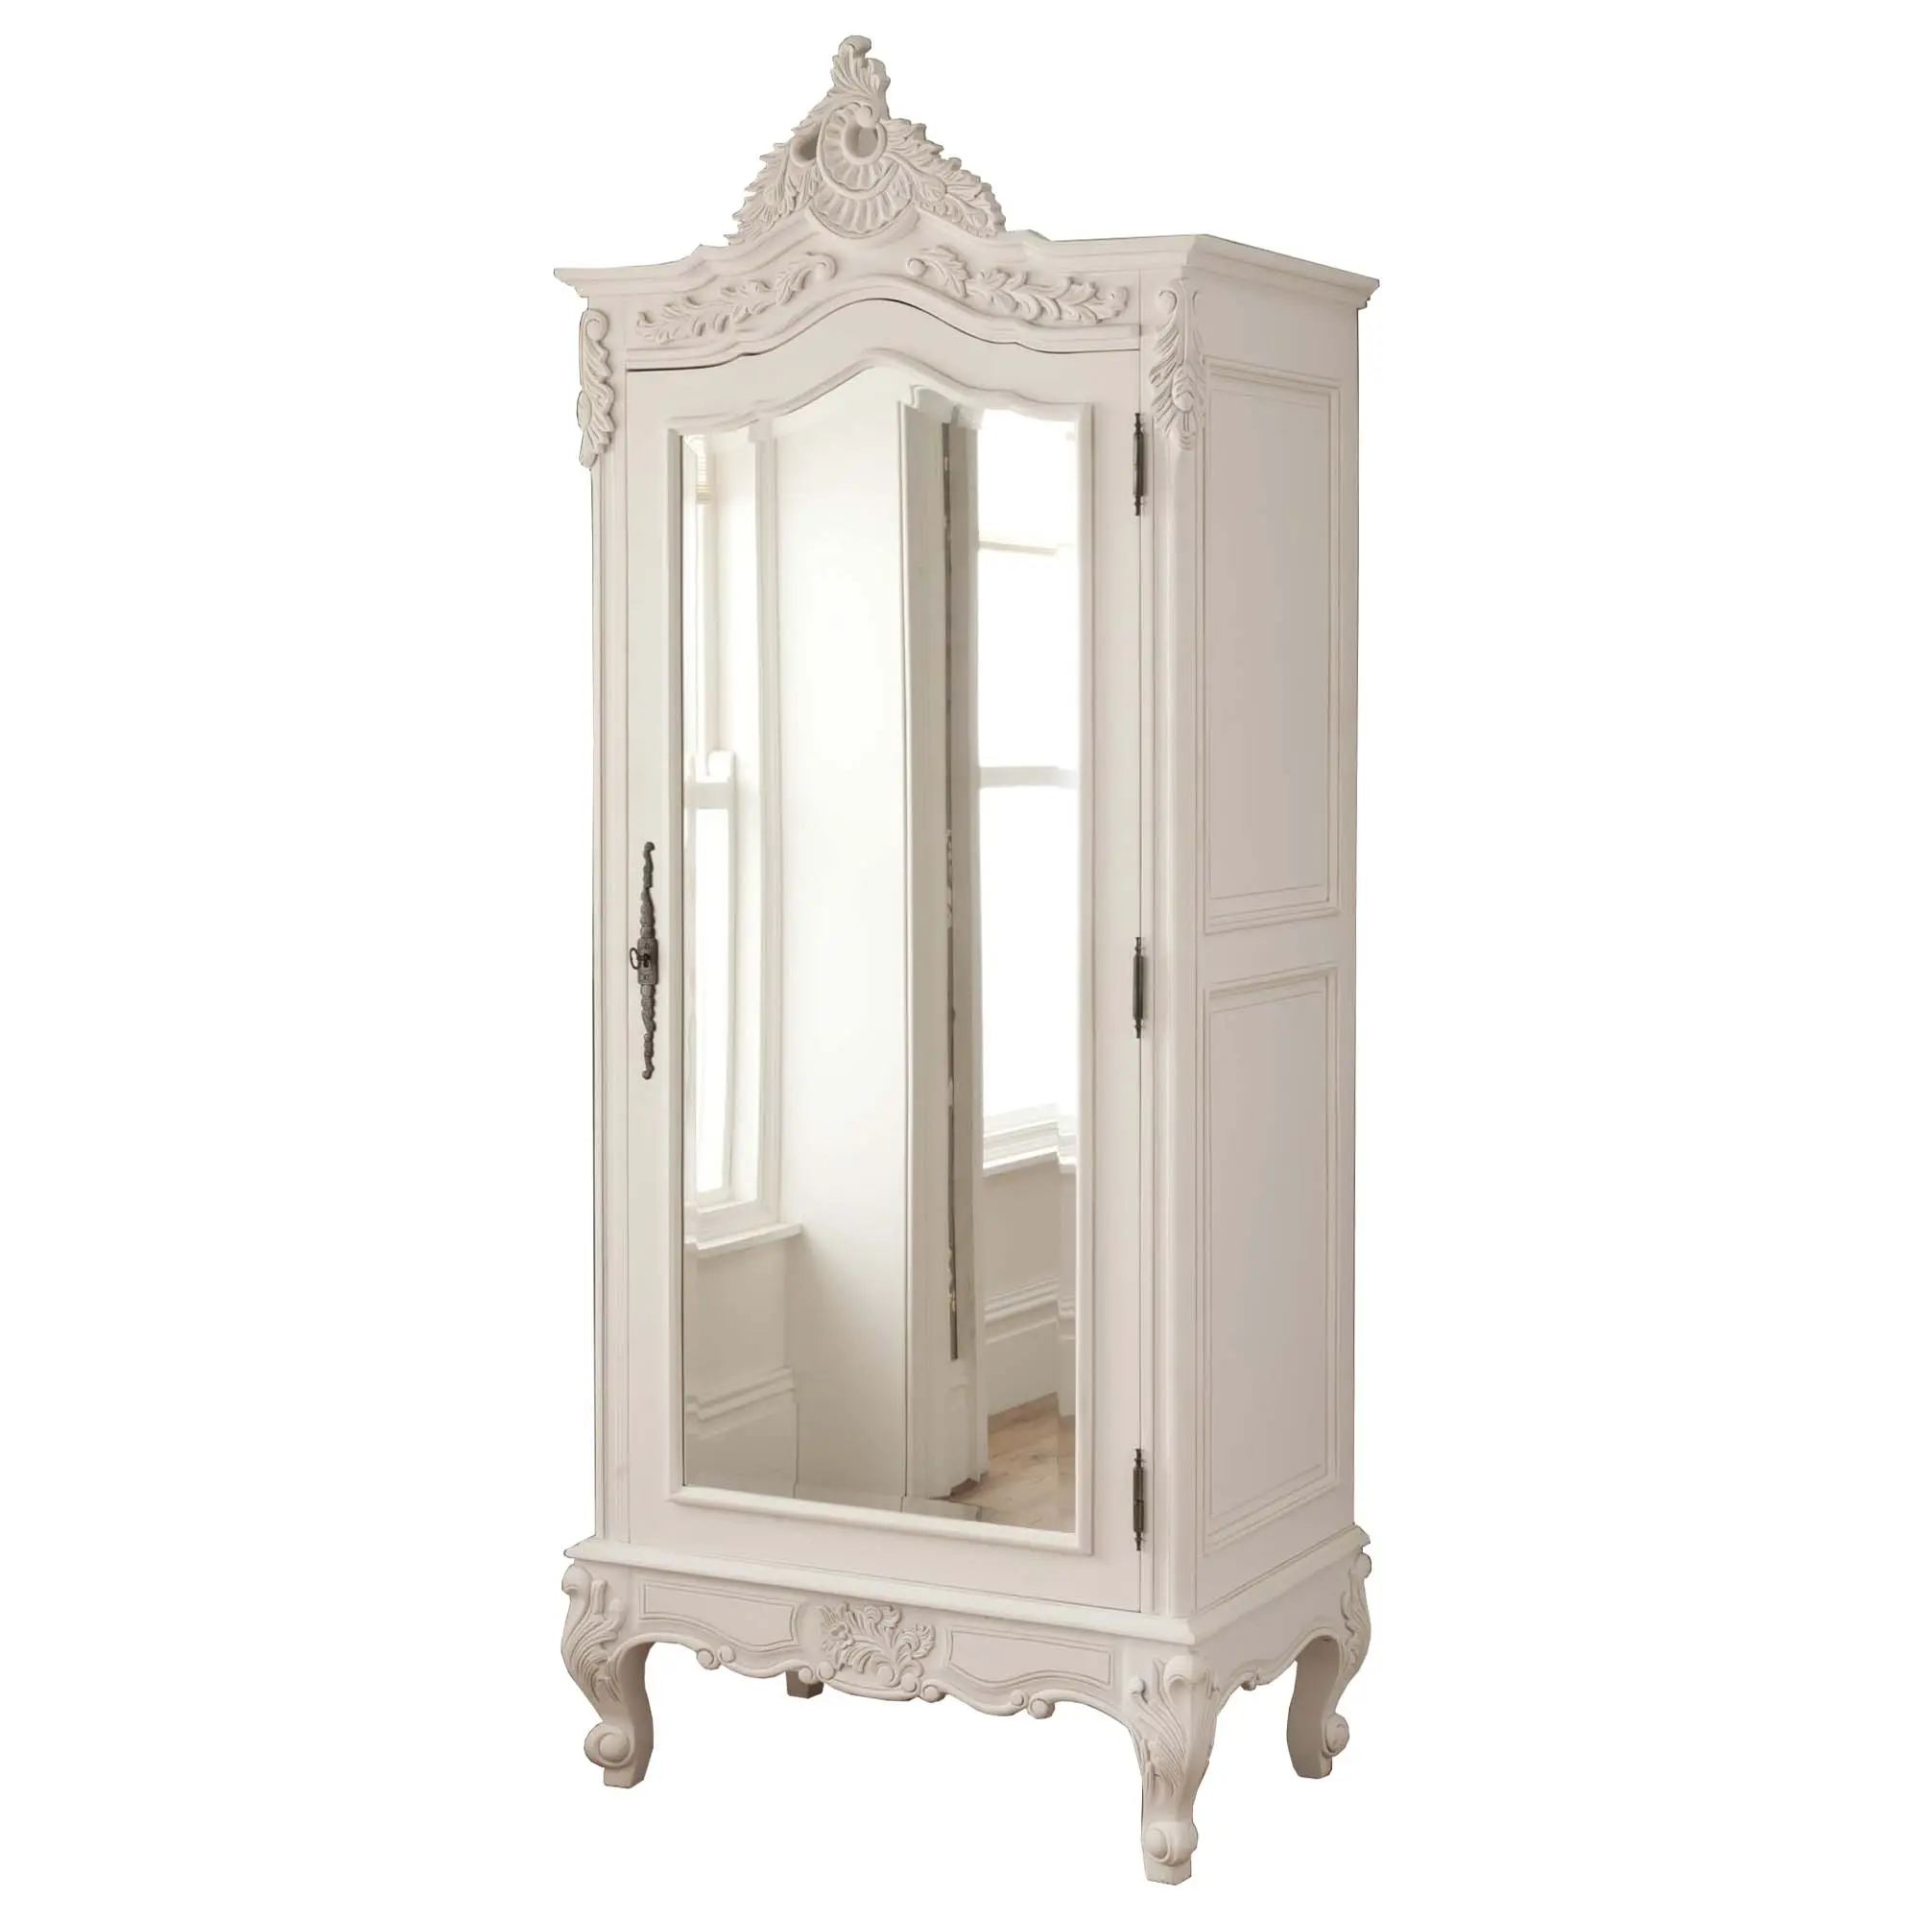 Bianco antico Intagliato A Mano in Stile Francese 1 Porta A Specchio Armadio Camera Da Letto Armadio